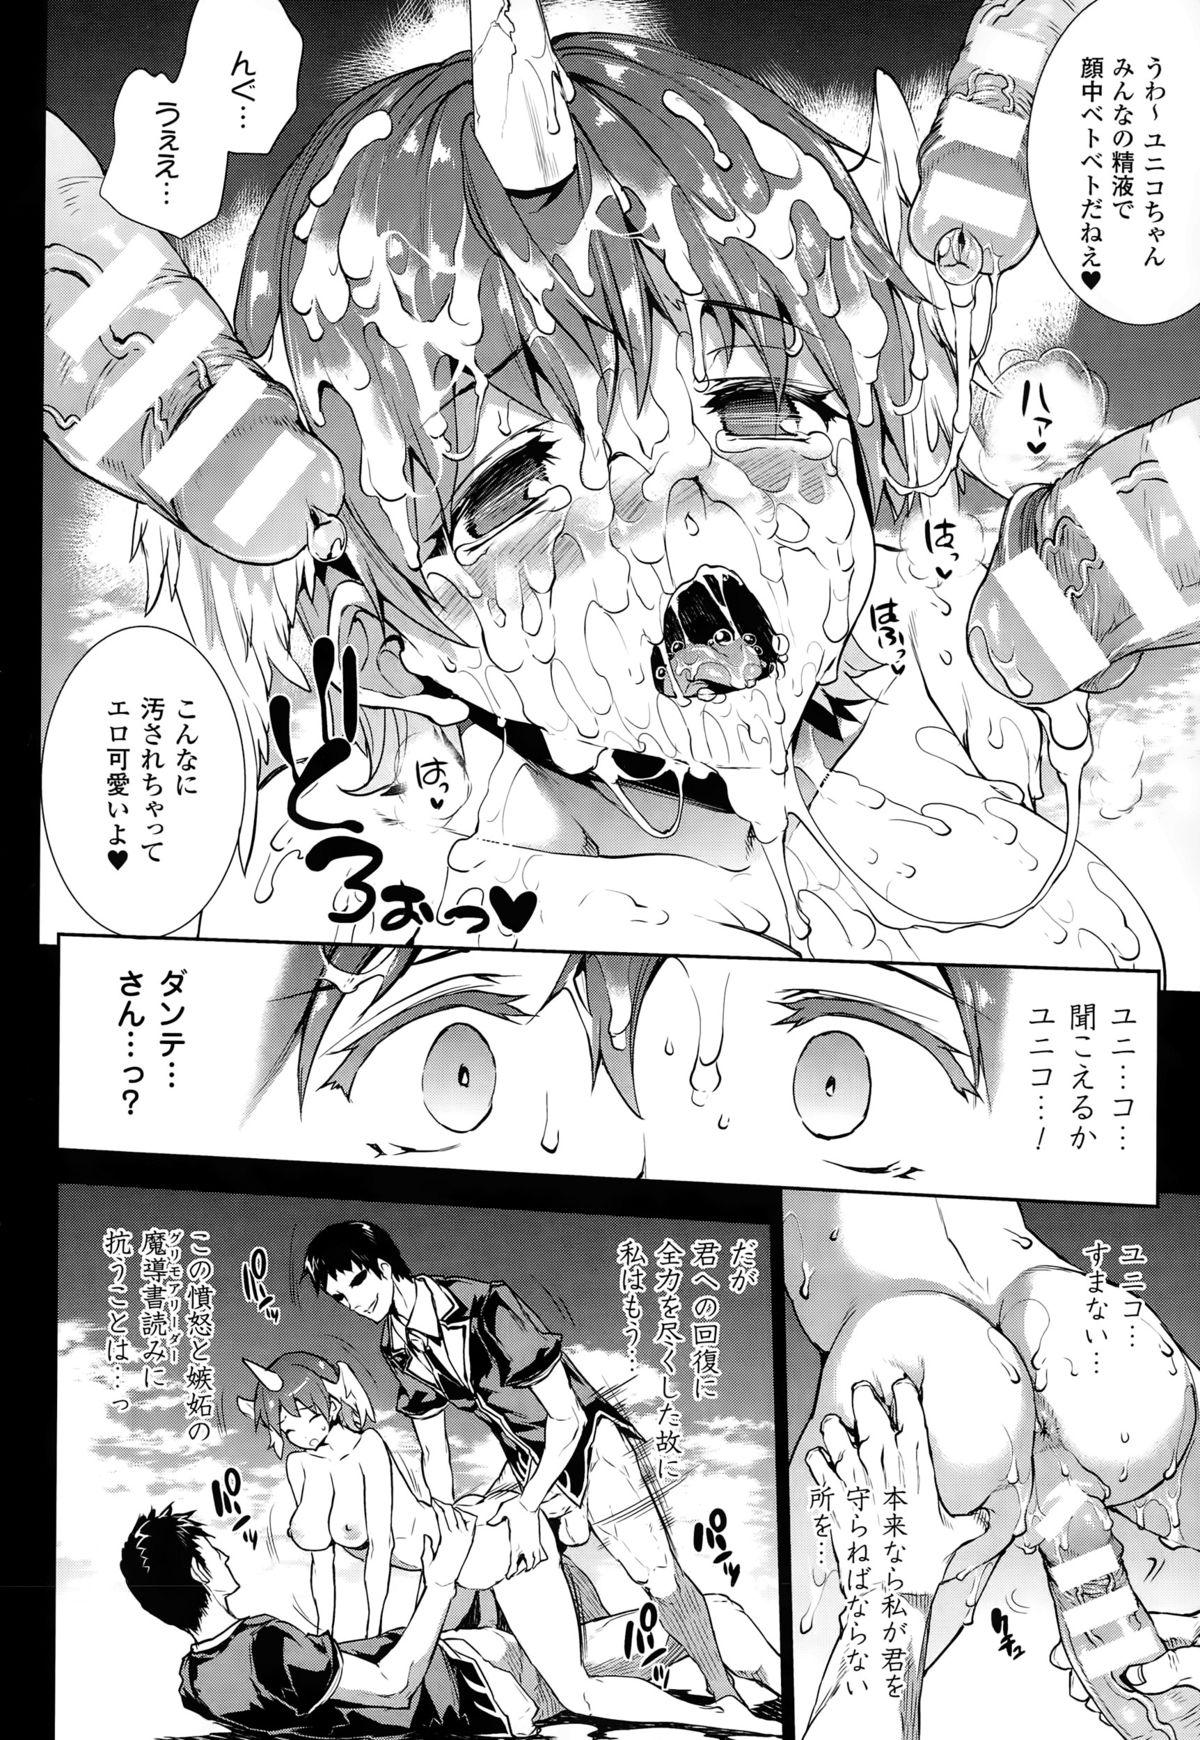 [Erect Sawaru] Shinkyoku no Grimoire -PANDRA saga 2nd story- CH 13-20 48